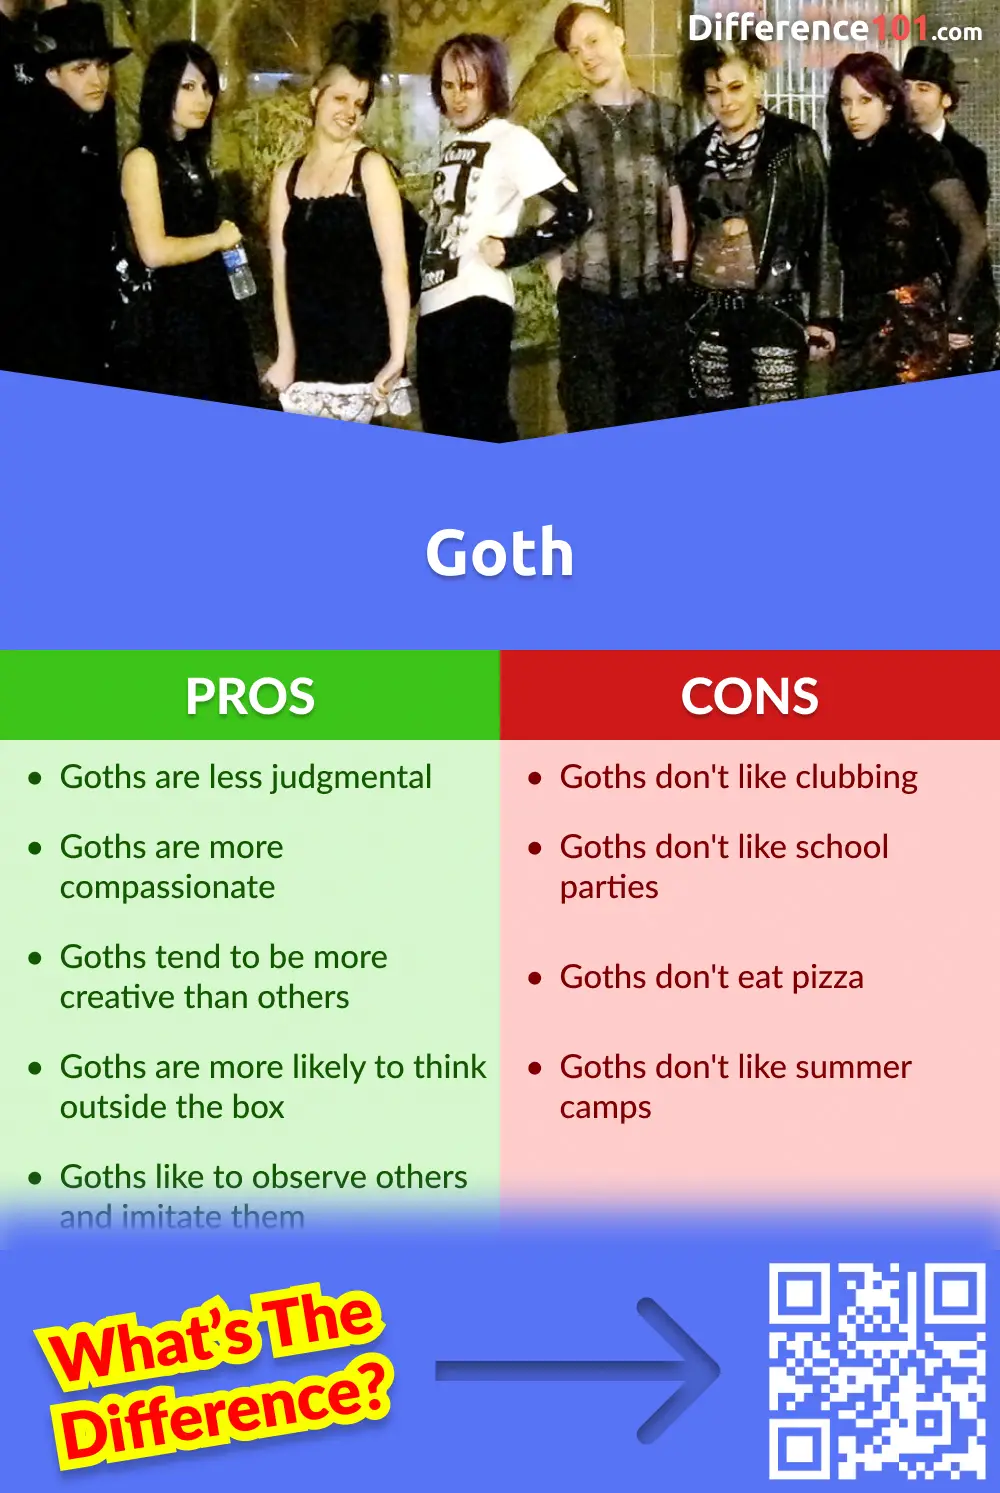 Goth : Avantages et inconvénients